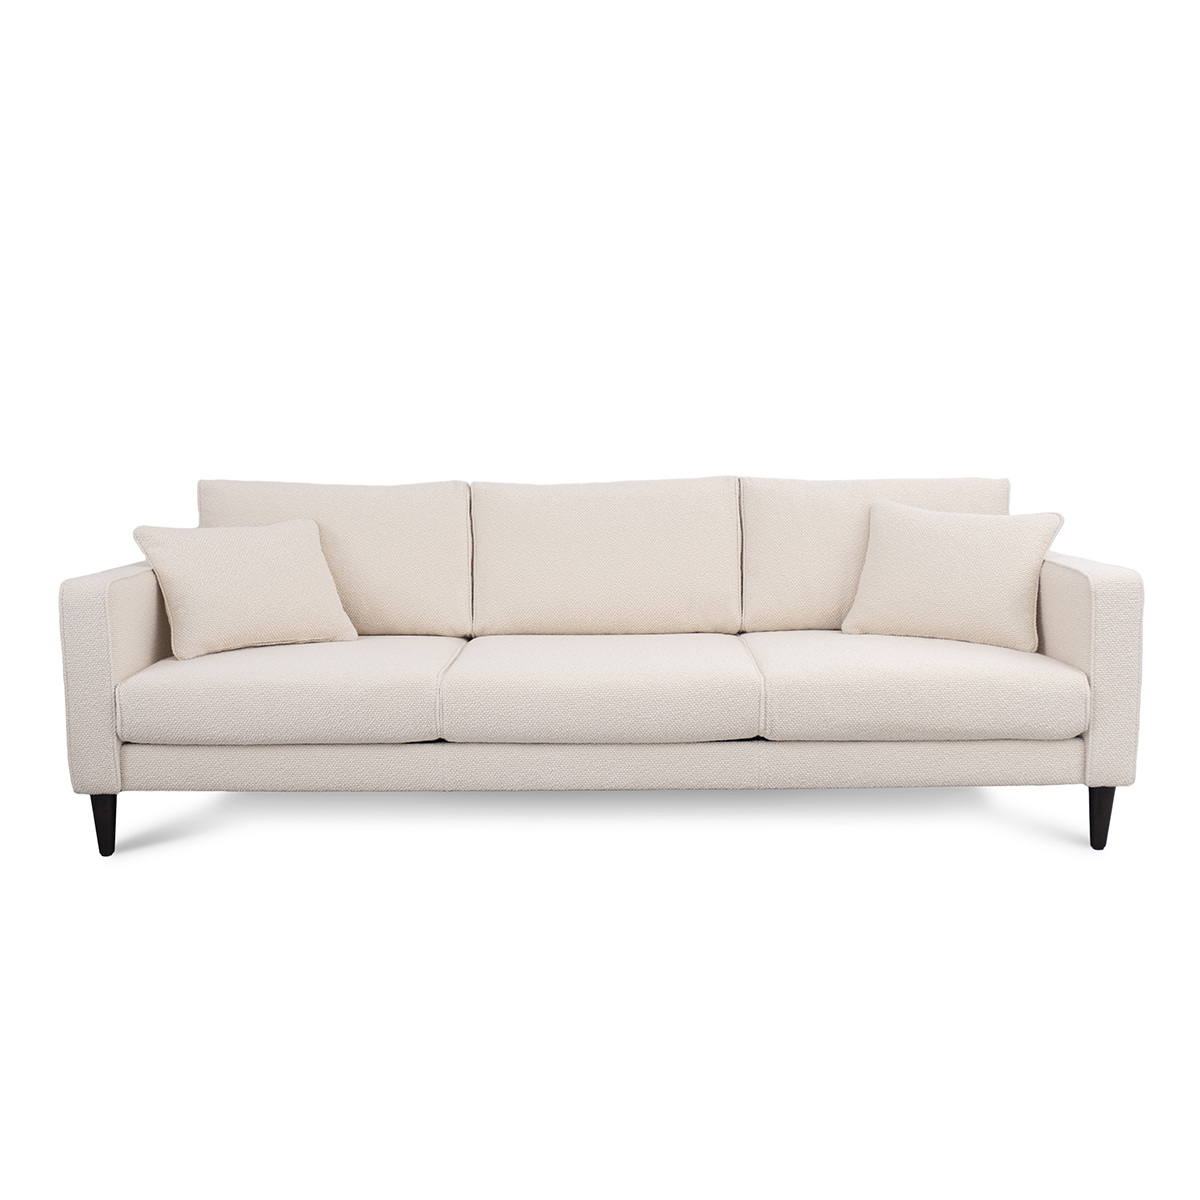 Sofa Noa, Wood - L230 x P90 x H80 cm - image 5